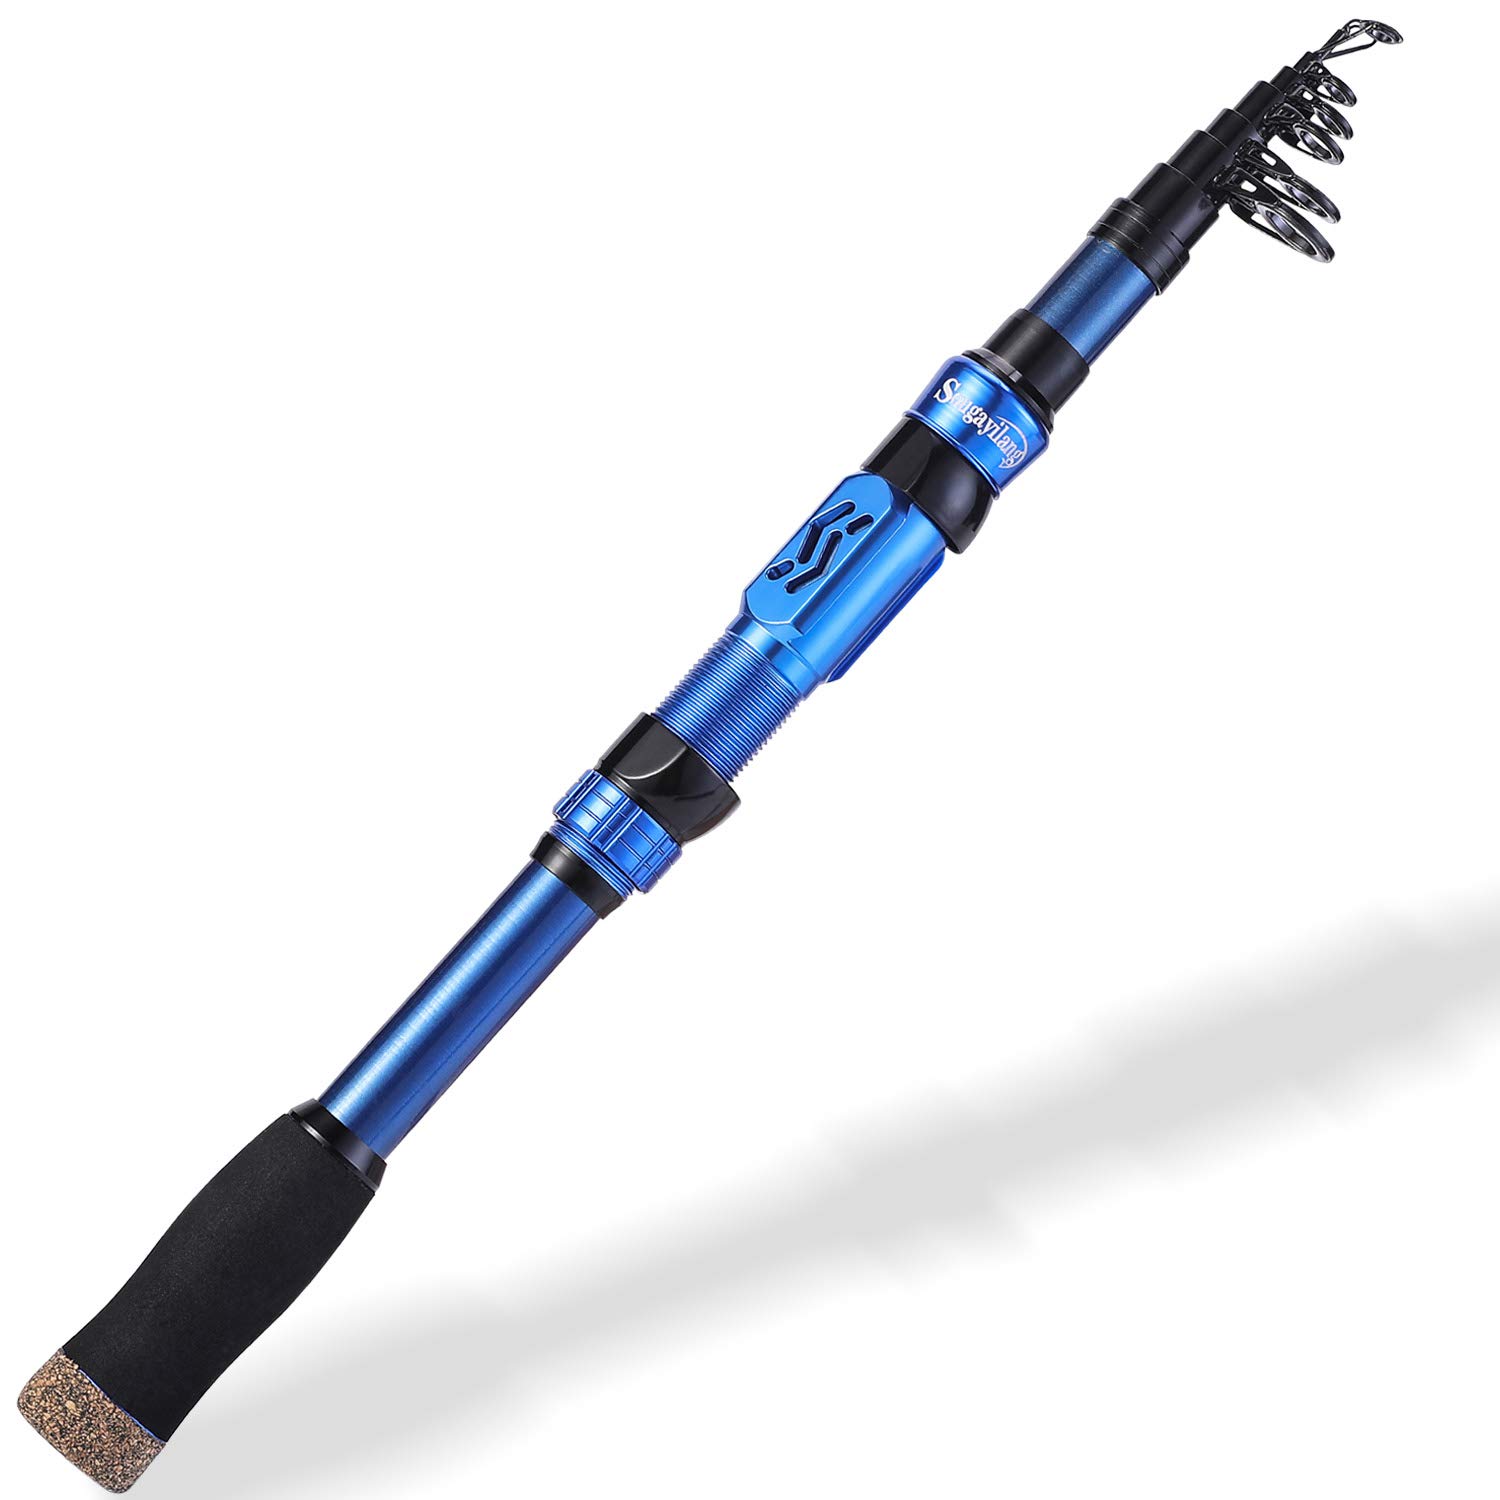 Telescopic Fishing Rod Portable Travel Fishing Rod Carbon Fiber